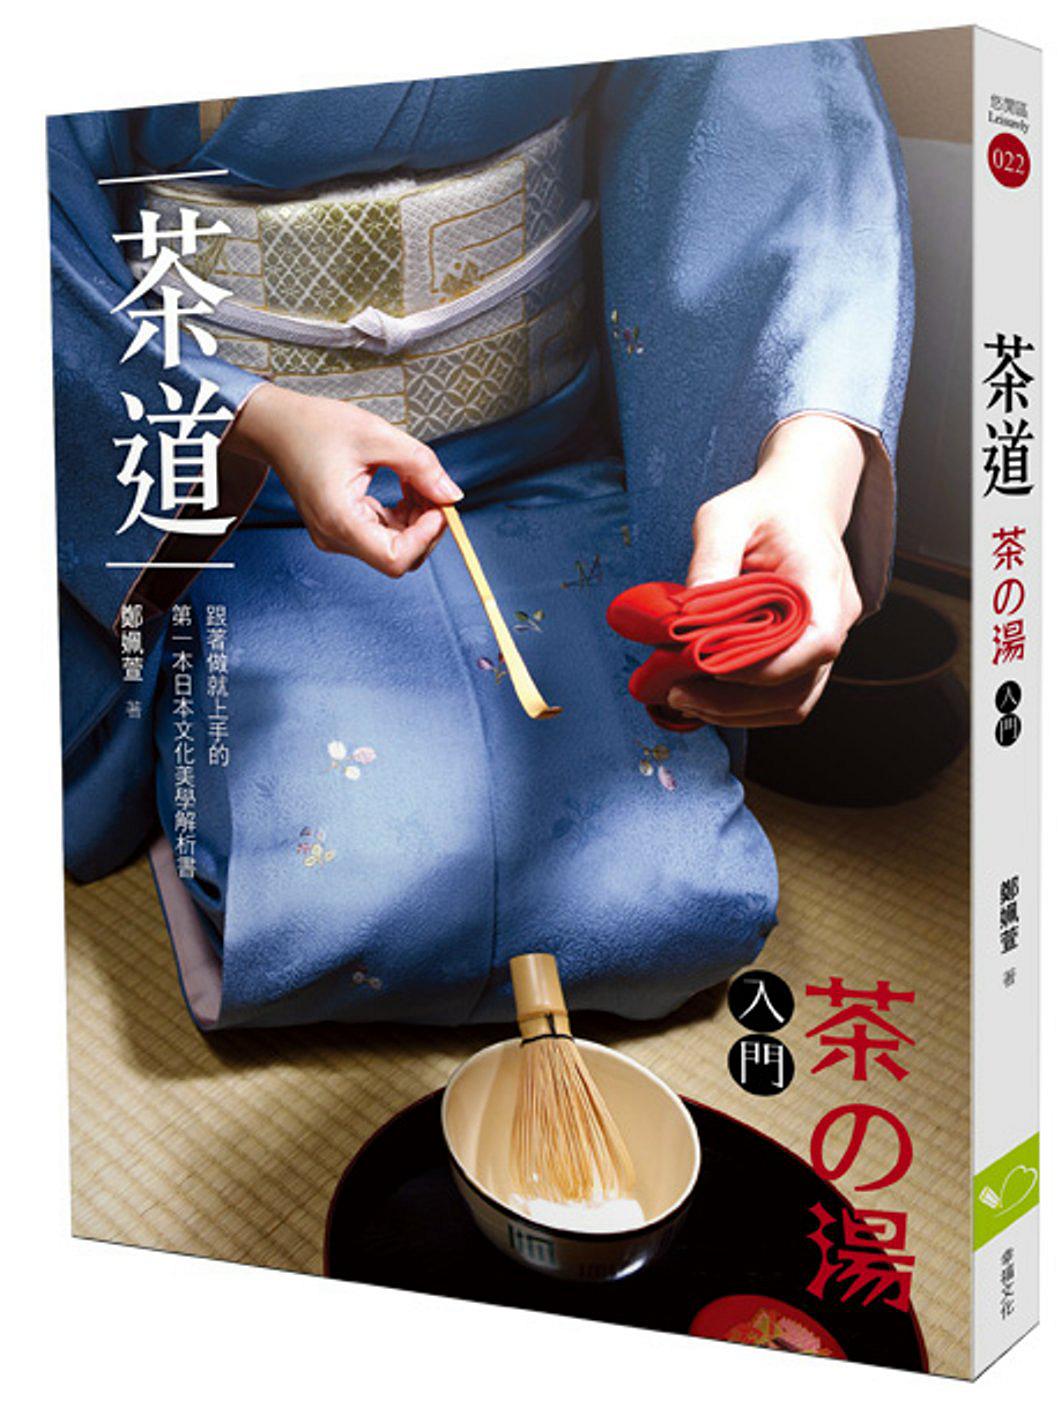 茶道(茶の湯入門)：跟著做就上手的第一本日本文化美學解析書